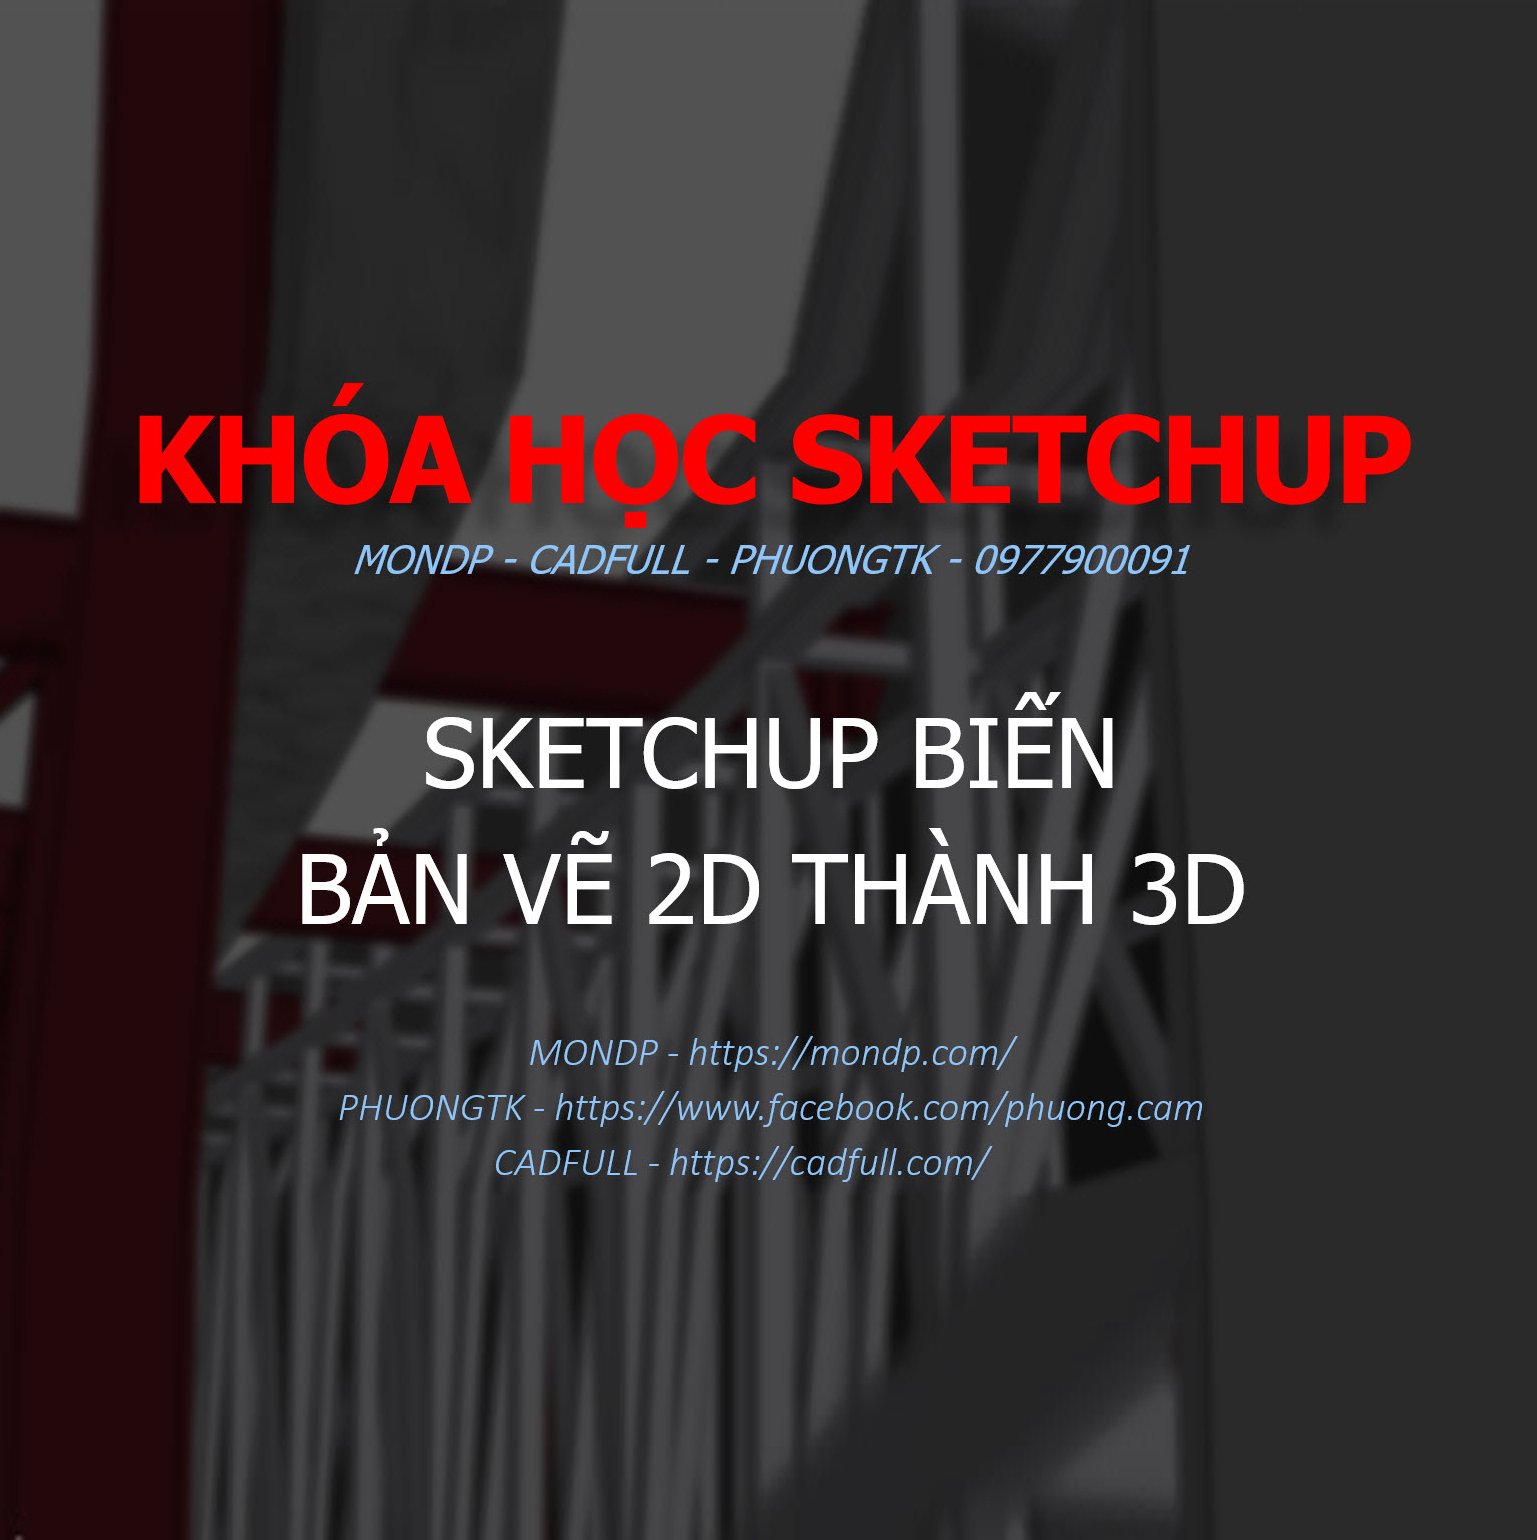 Bạn muốn biến những bản vẽ 2D thành những mô hình hoàn chỉnh 3D đáng ngưỡng mộ? Hãy cùng tham khảo Sketchup - một trong những công cụ hỗ trợ cực kỳ tuyệt vời. Với điều khiển dễ dàng, đơn giản và khả năng tùy chỉnh cao, bạn sẽ không thể tin được những gì bạn có thể làm được với nó!